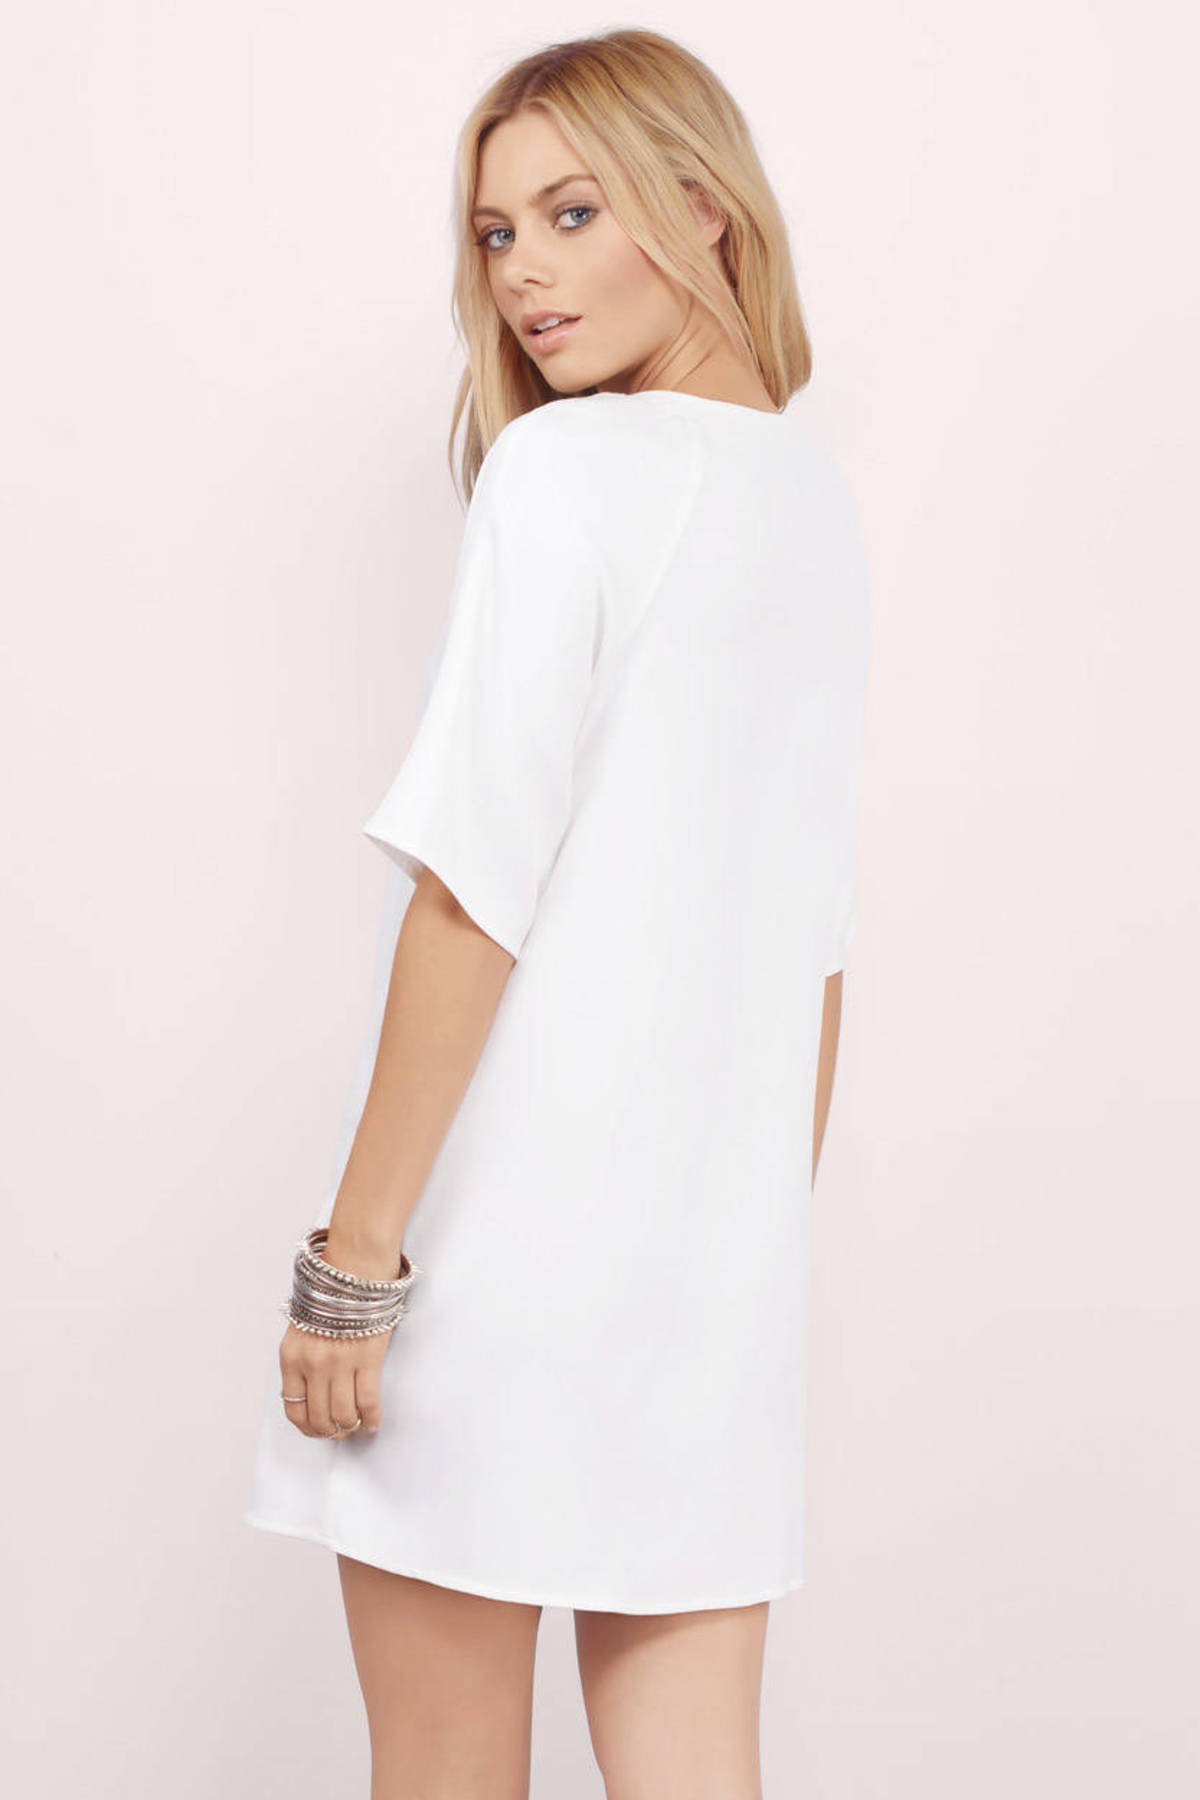 Lex Oversized Tee Dress in White - $12 | Tobi US